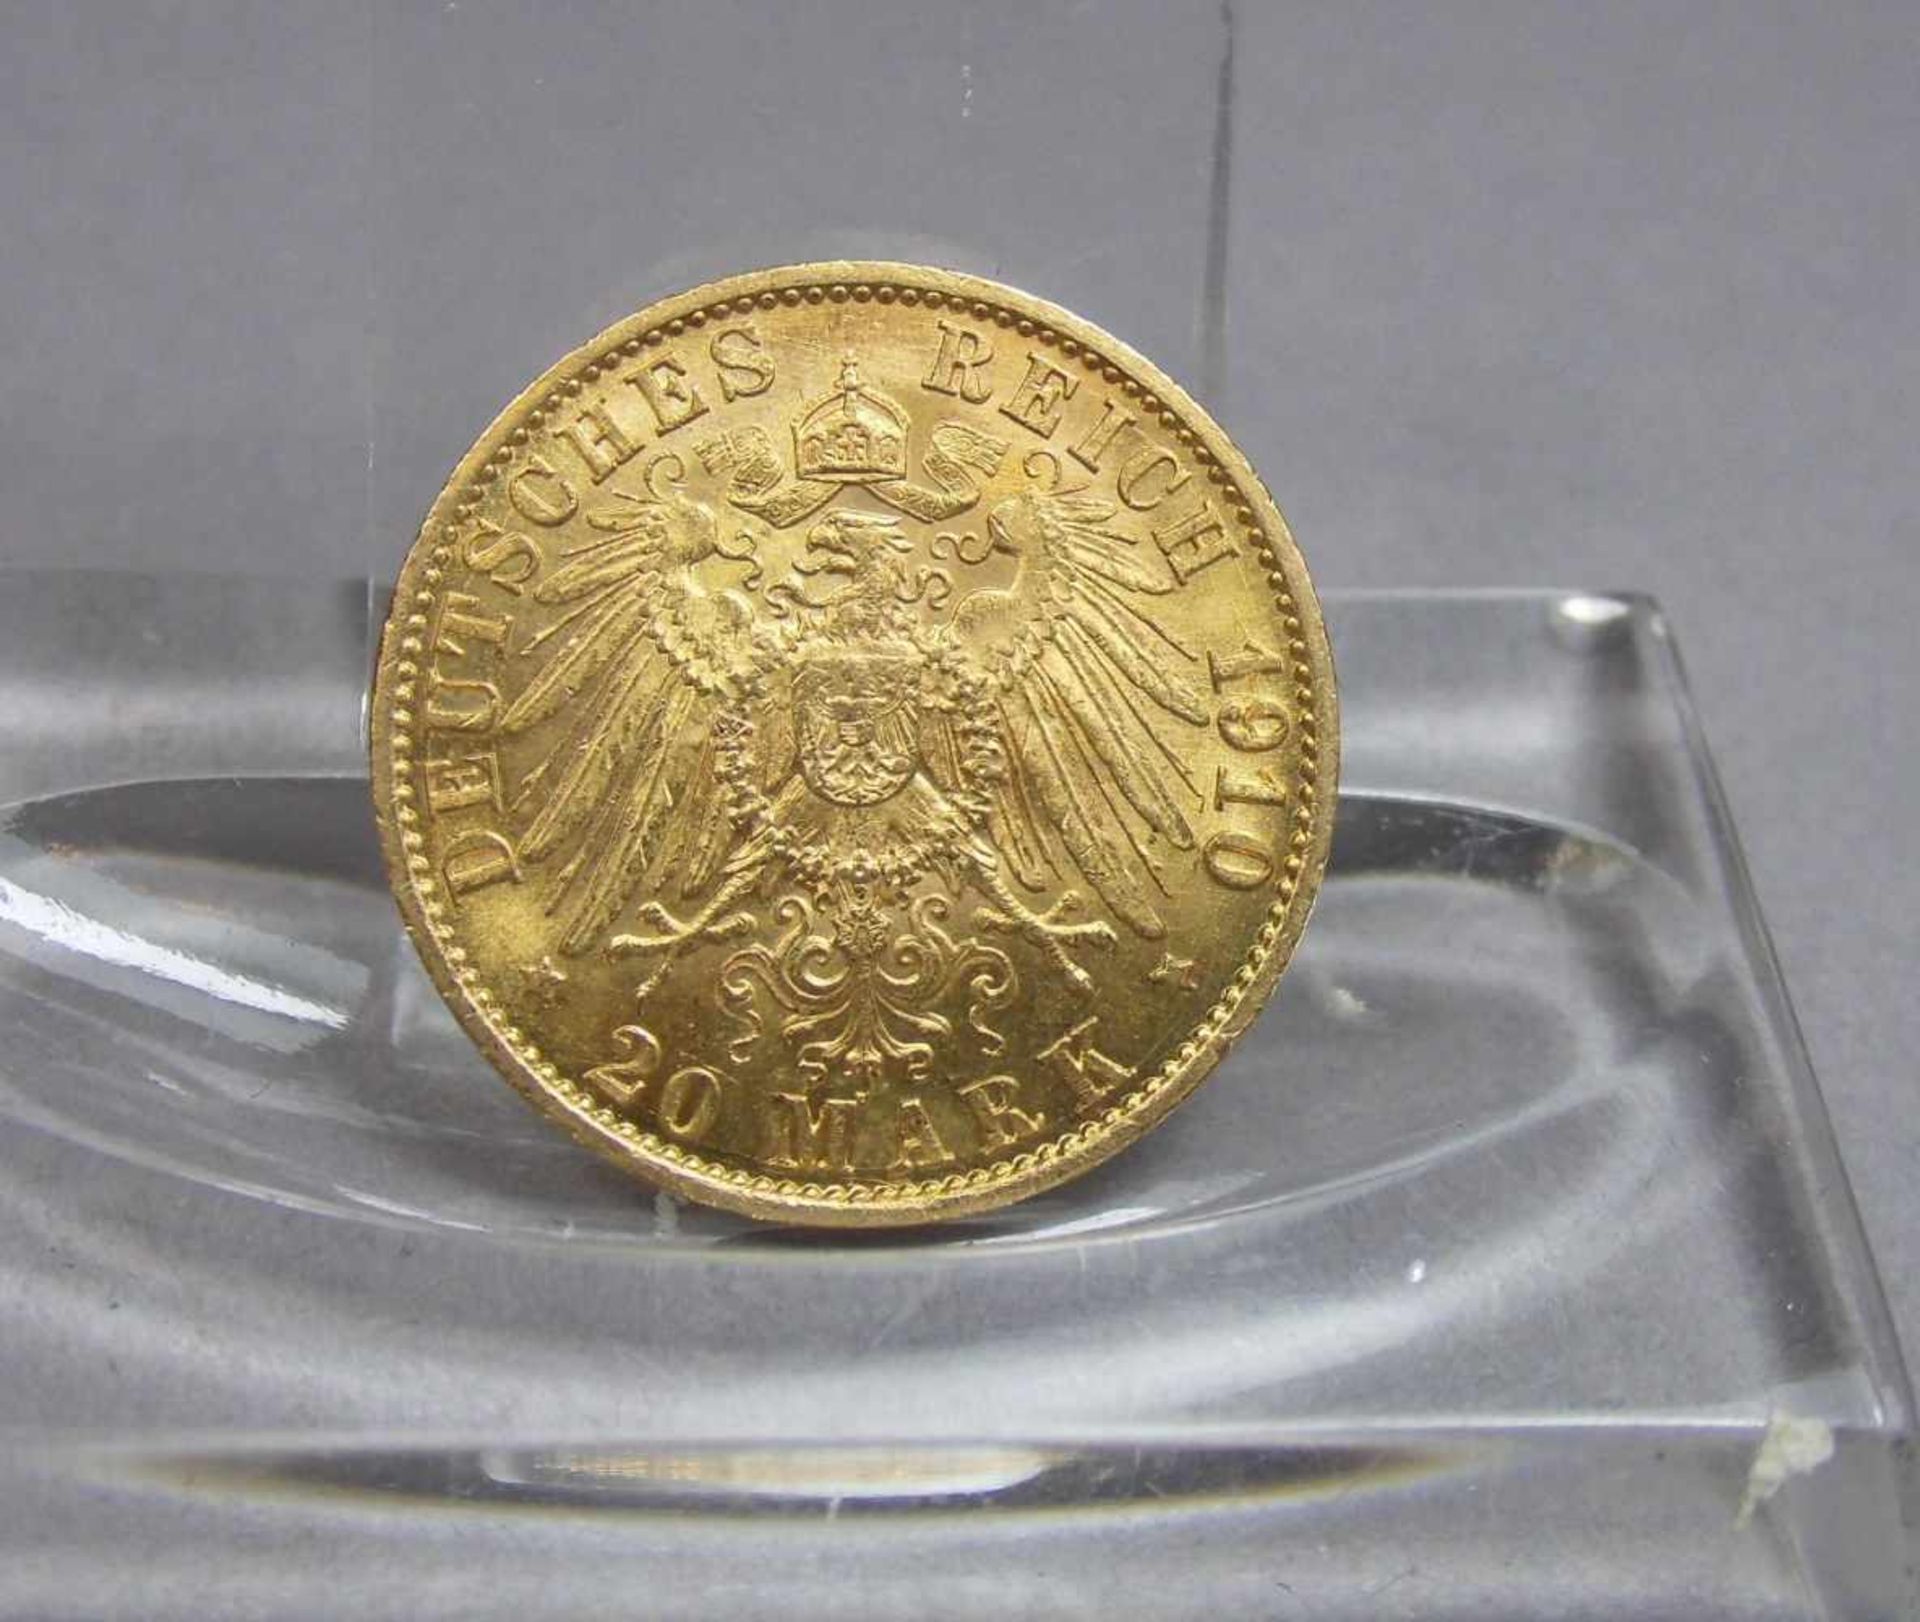 GOLDMÜNZE - 20 MARK - DEUTSCHES REICH, 1910, 900er Gold, 7,96 g. Münze bez. "Deutsches Reich /